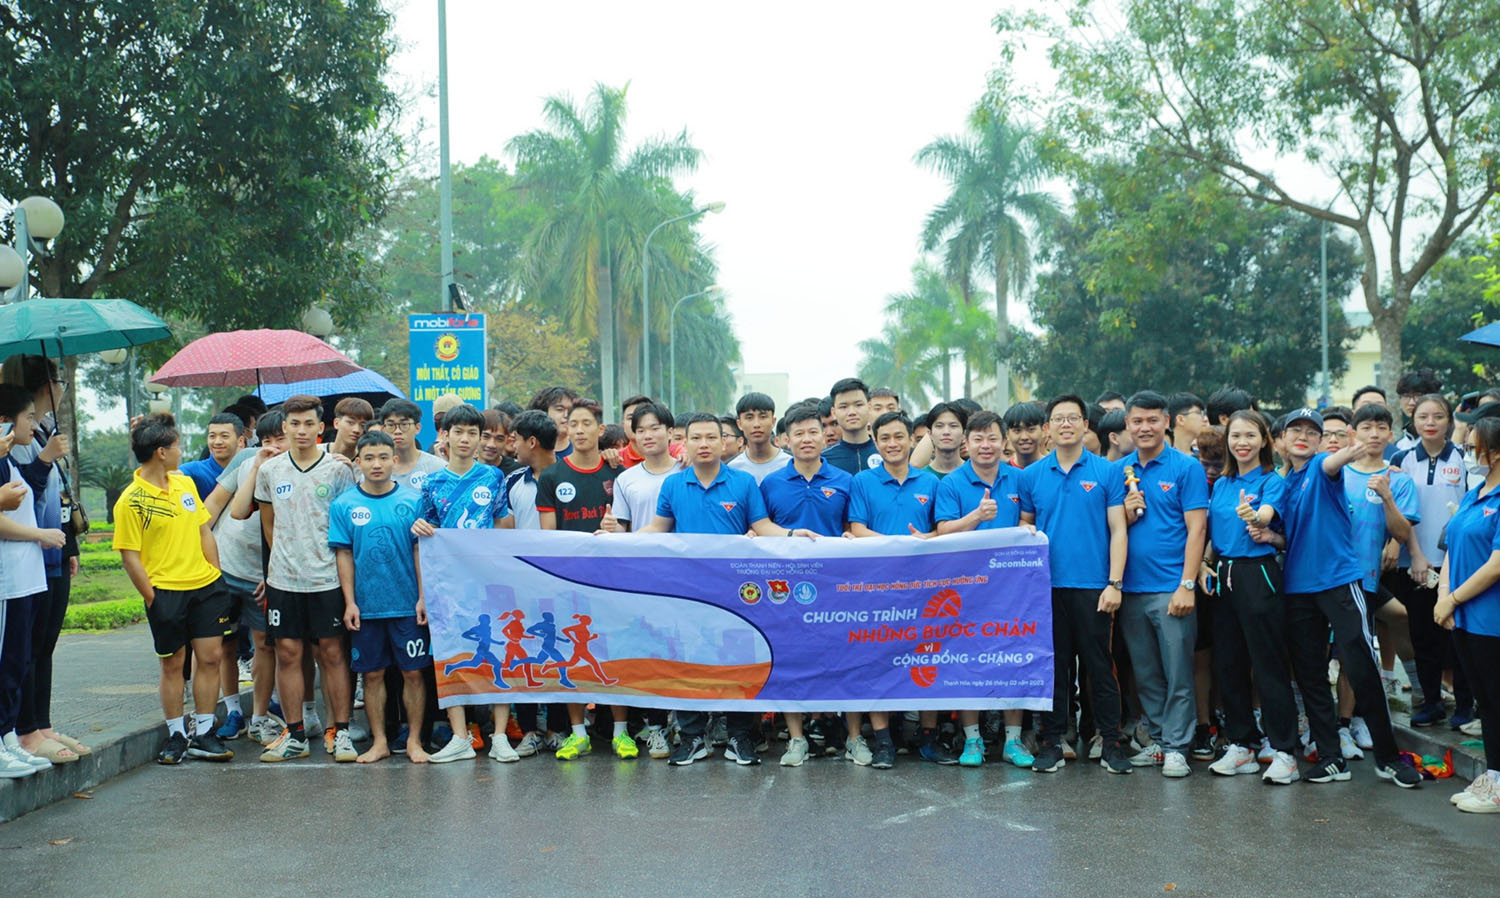 460 vận động viên tham gia Giải chạy việt dã "Running for youth” do Đoàn Thanh niên Trường Đại học Hồng Đức tổ chức